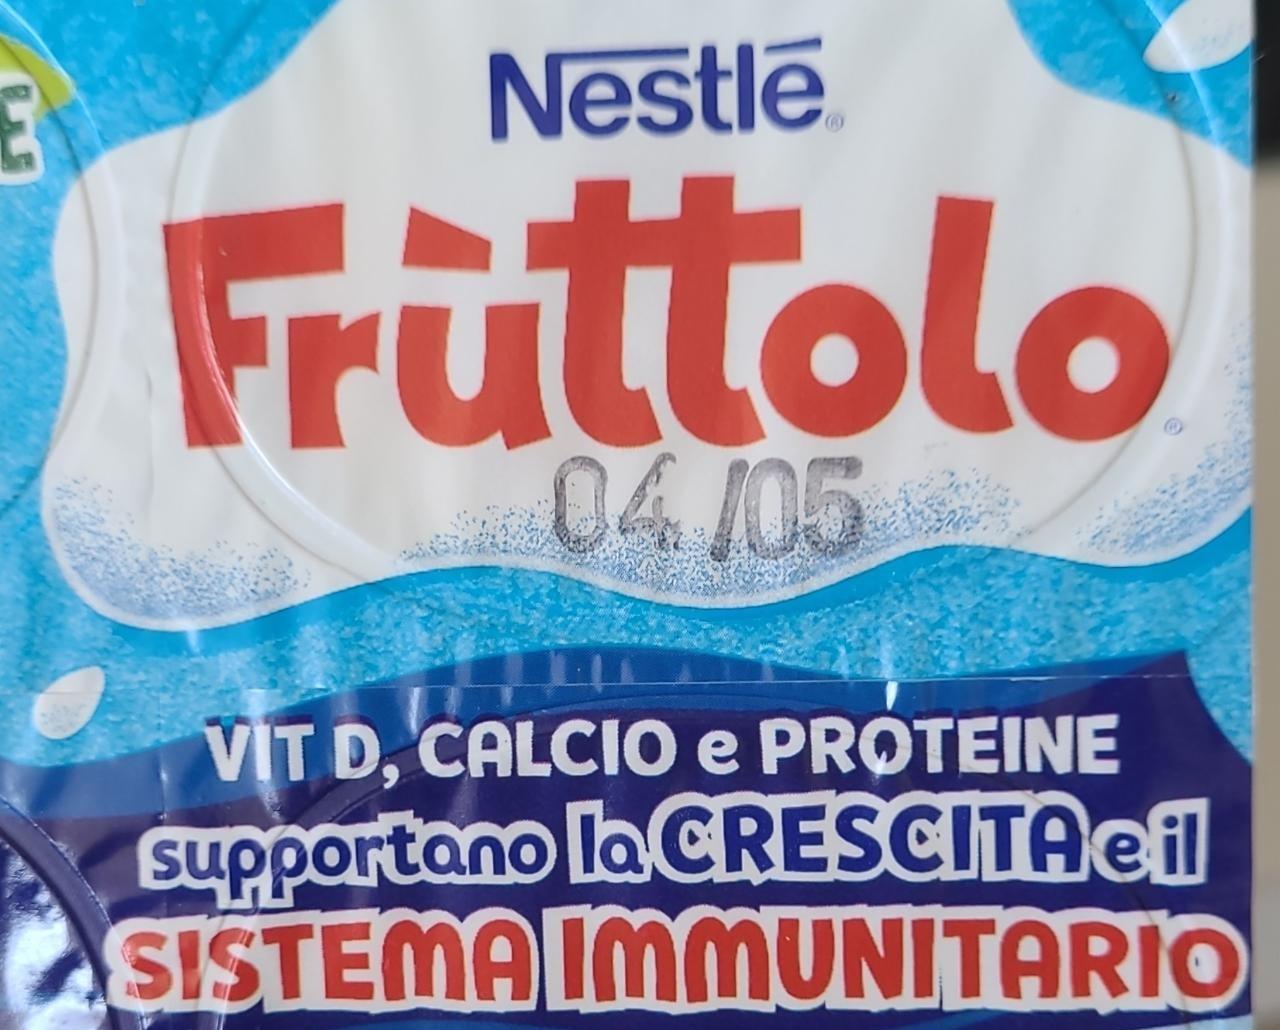 Фото - Йогурт Fruttolo Nestlé